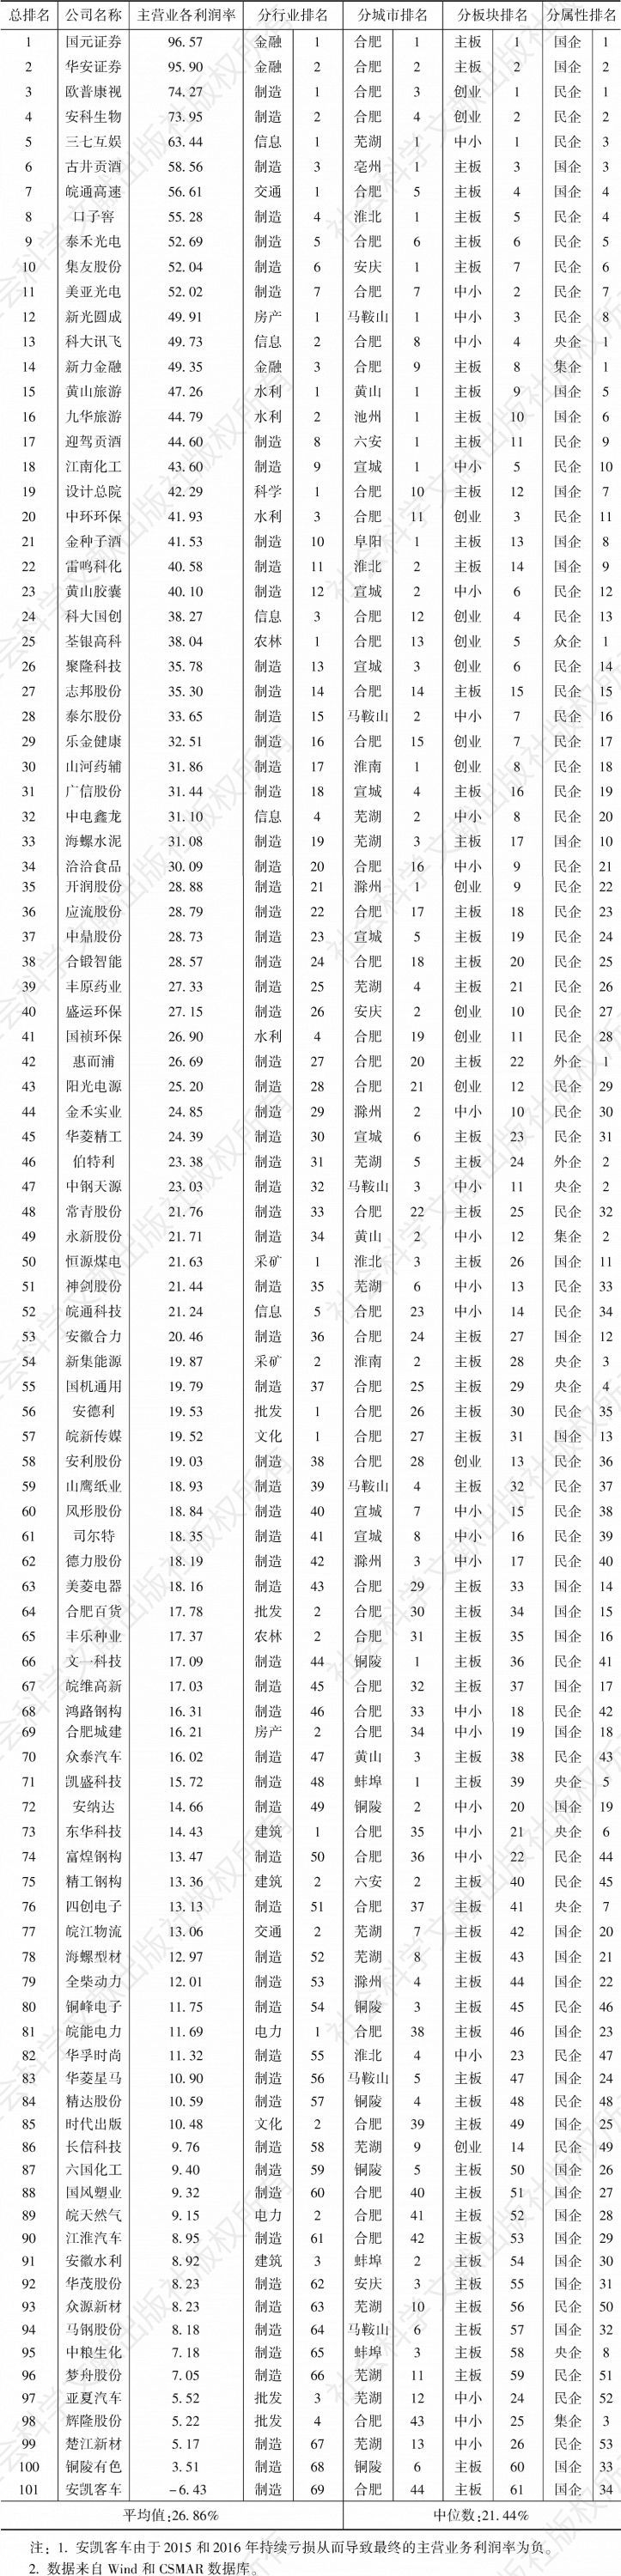 附件4 2017年安徽省上市公司主营业务利润率排名